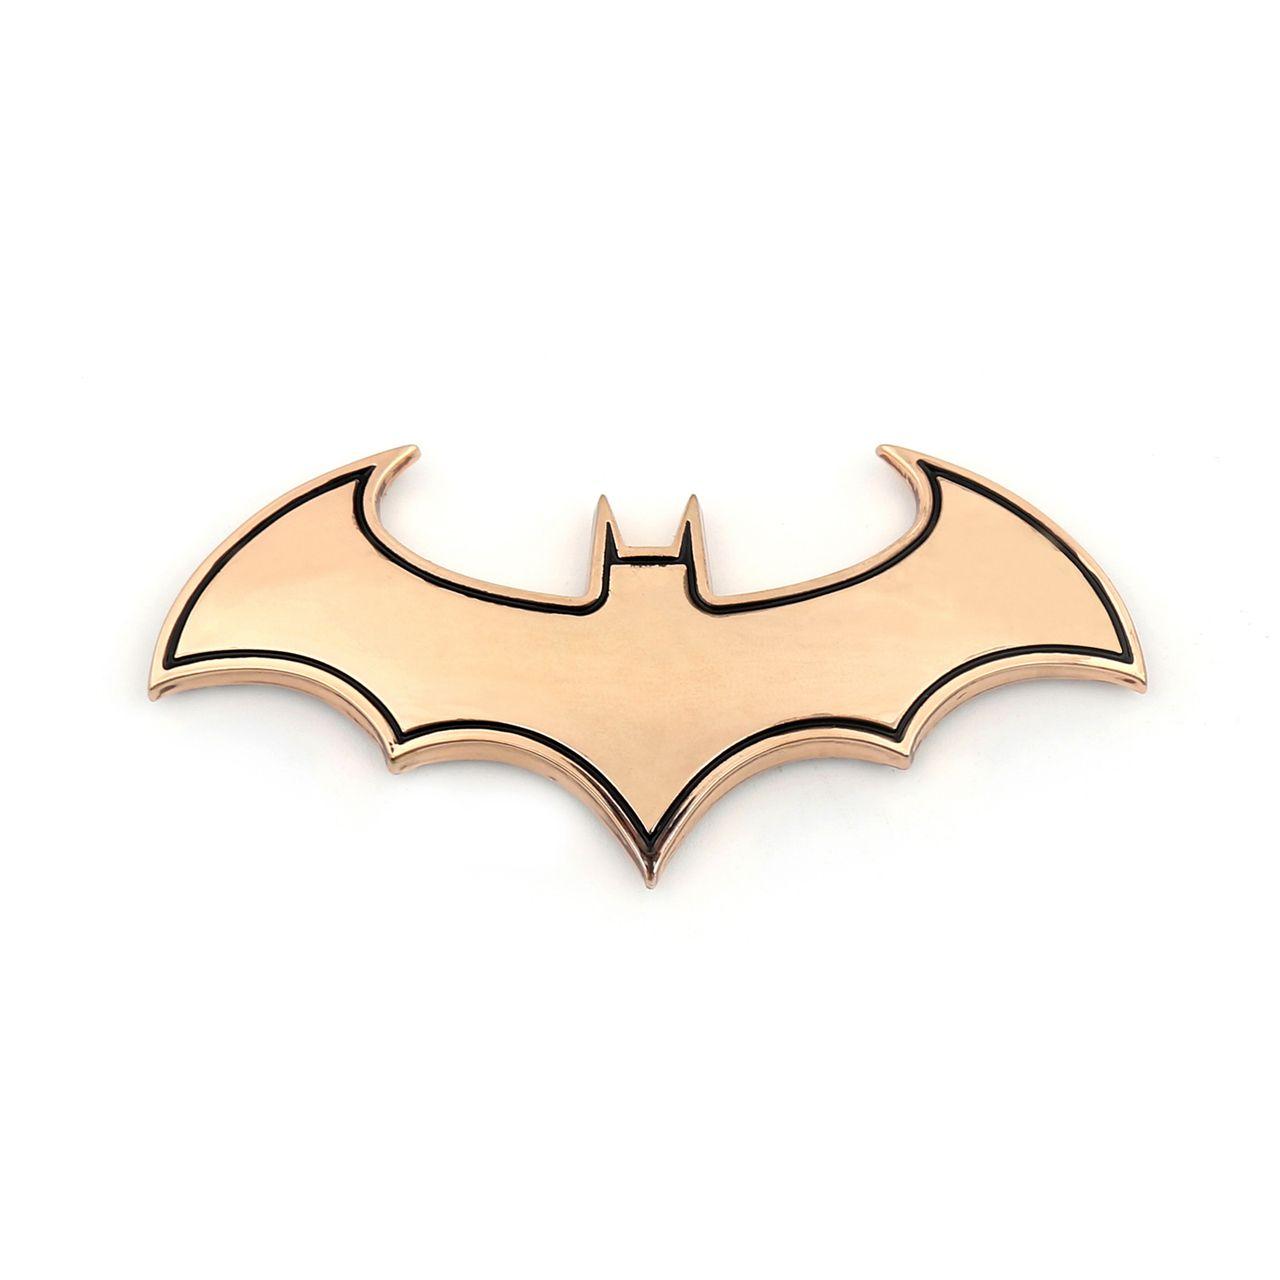 Gold Bat Logo - Batman Emblem Bat Badge SuperCool Metal Sticker Decal Accessories ...